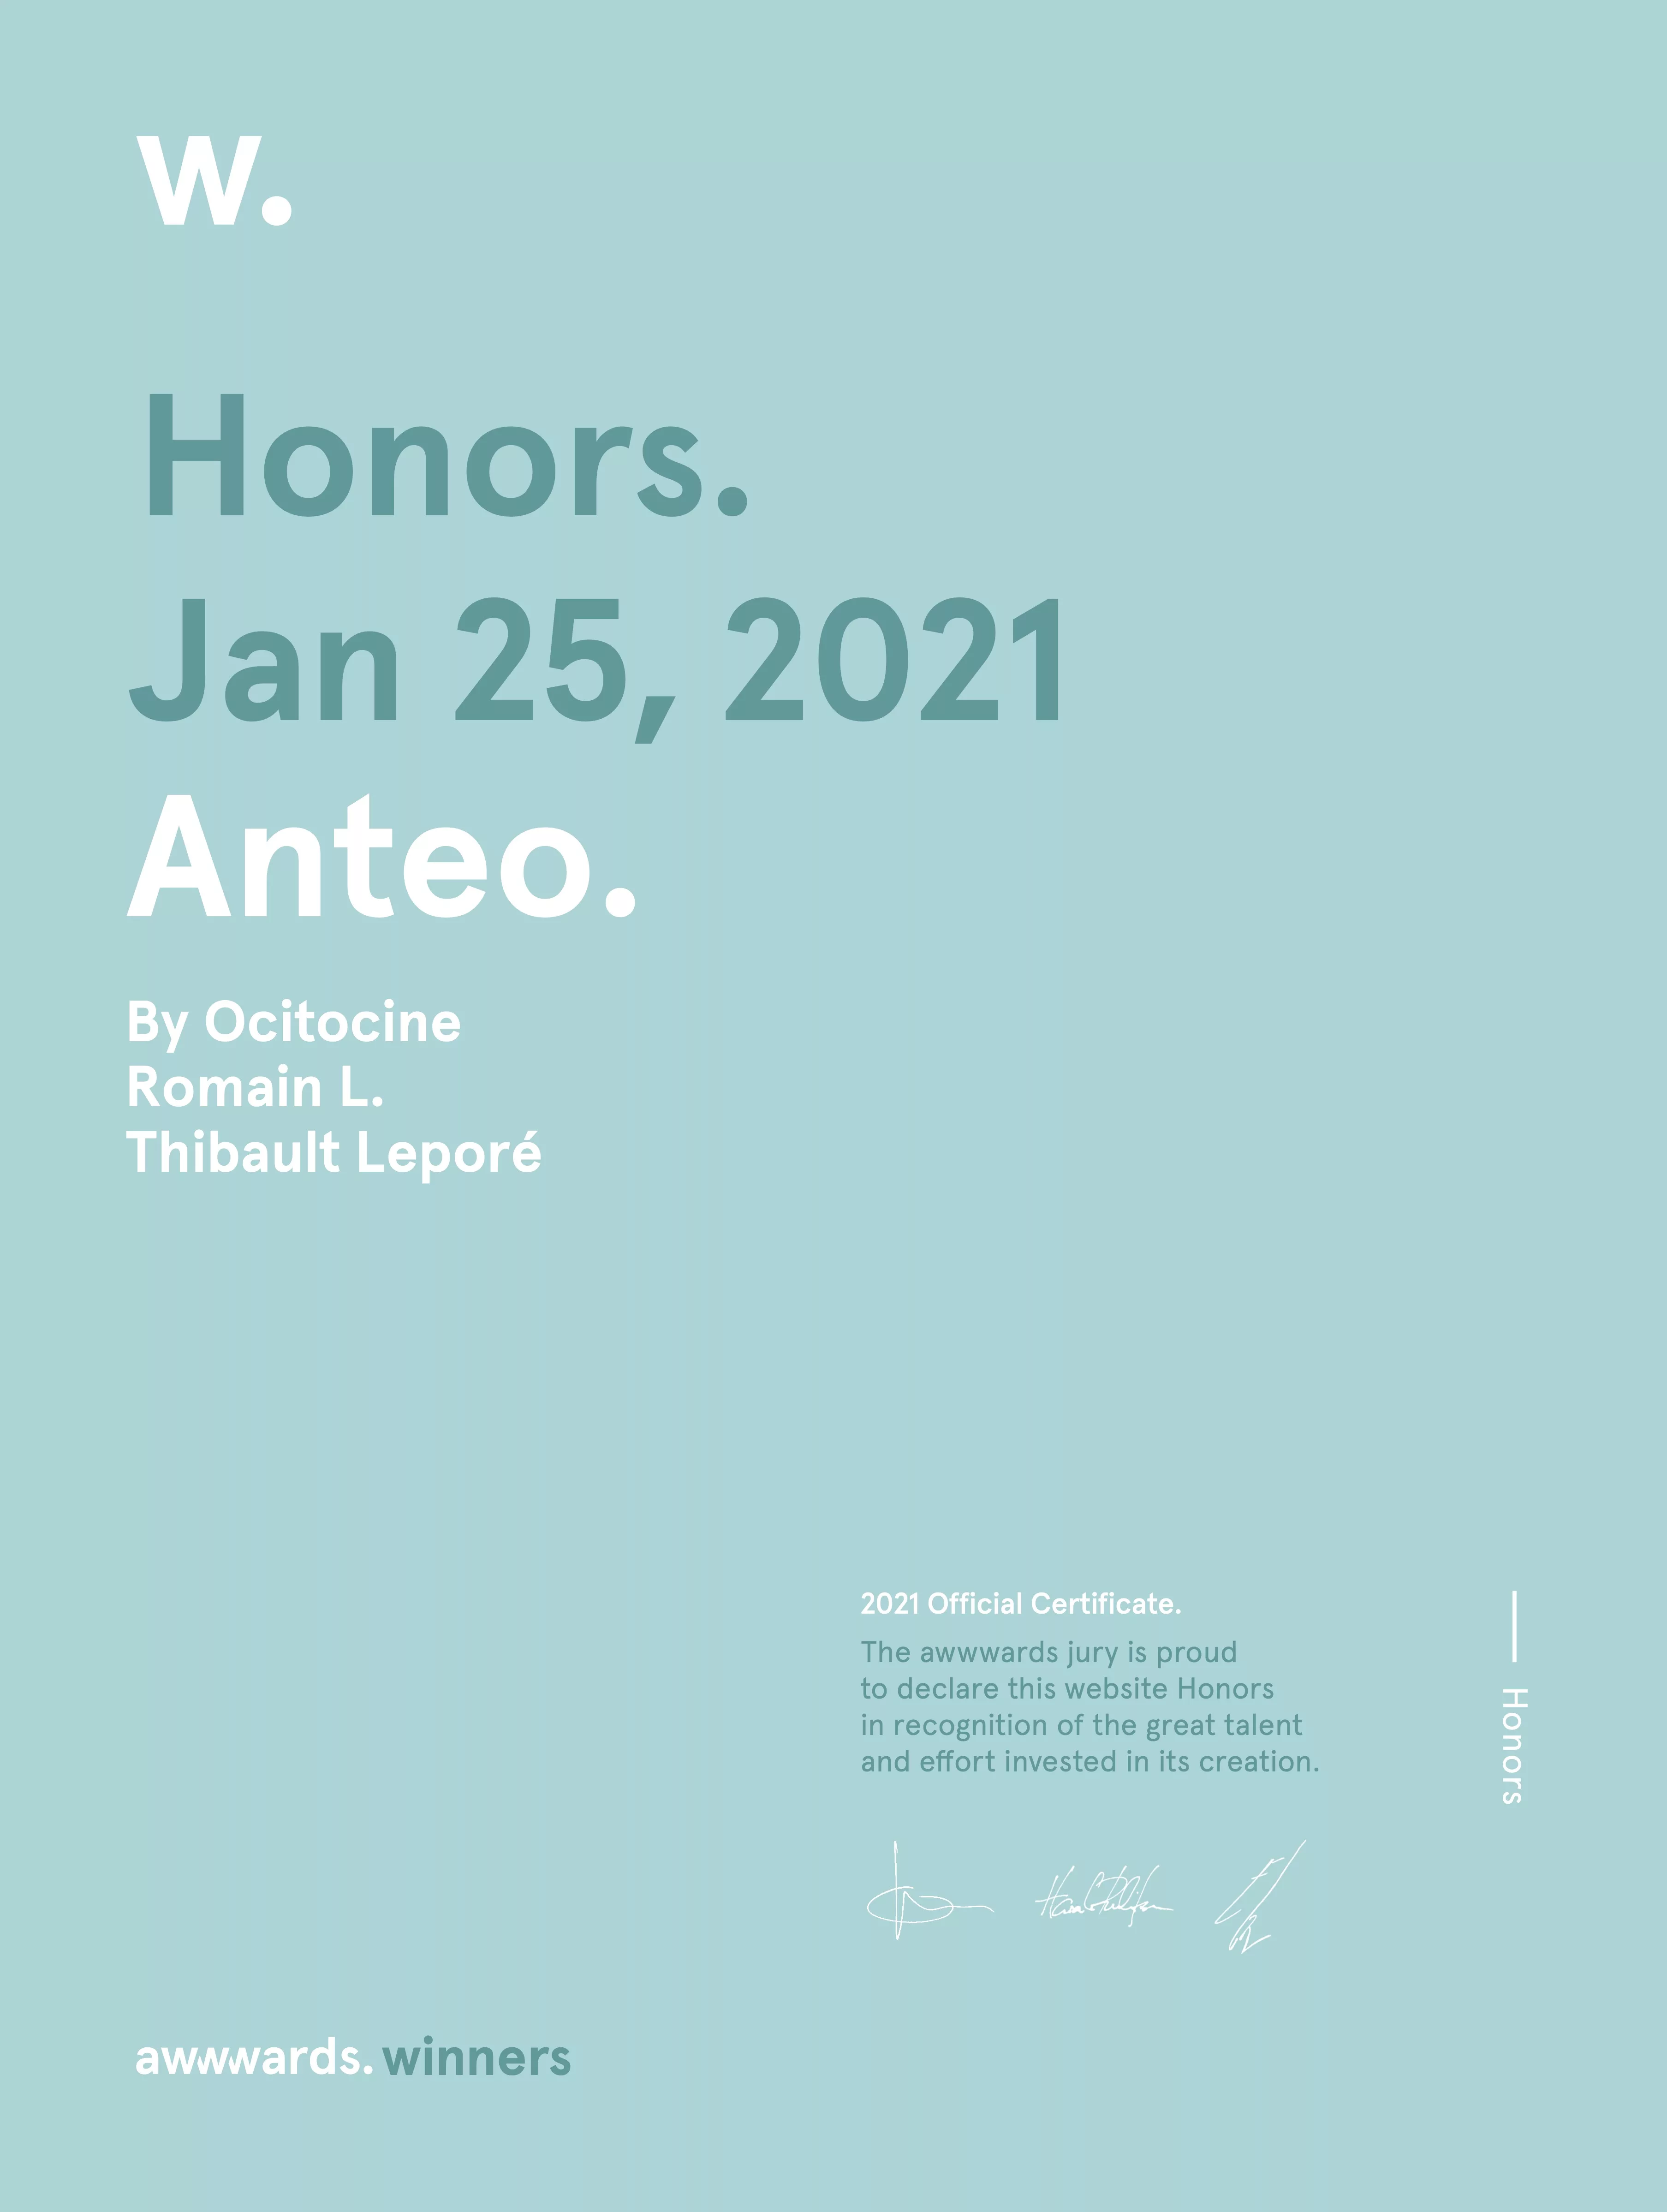 Ocitocine, agence créative web et branding, a remporté un prix "Awwwards Honorable Mention" pour la réalisation du site web anteo.pro